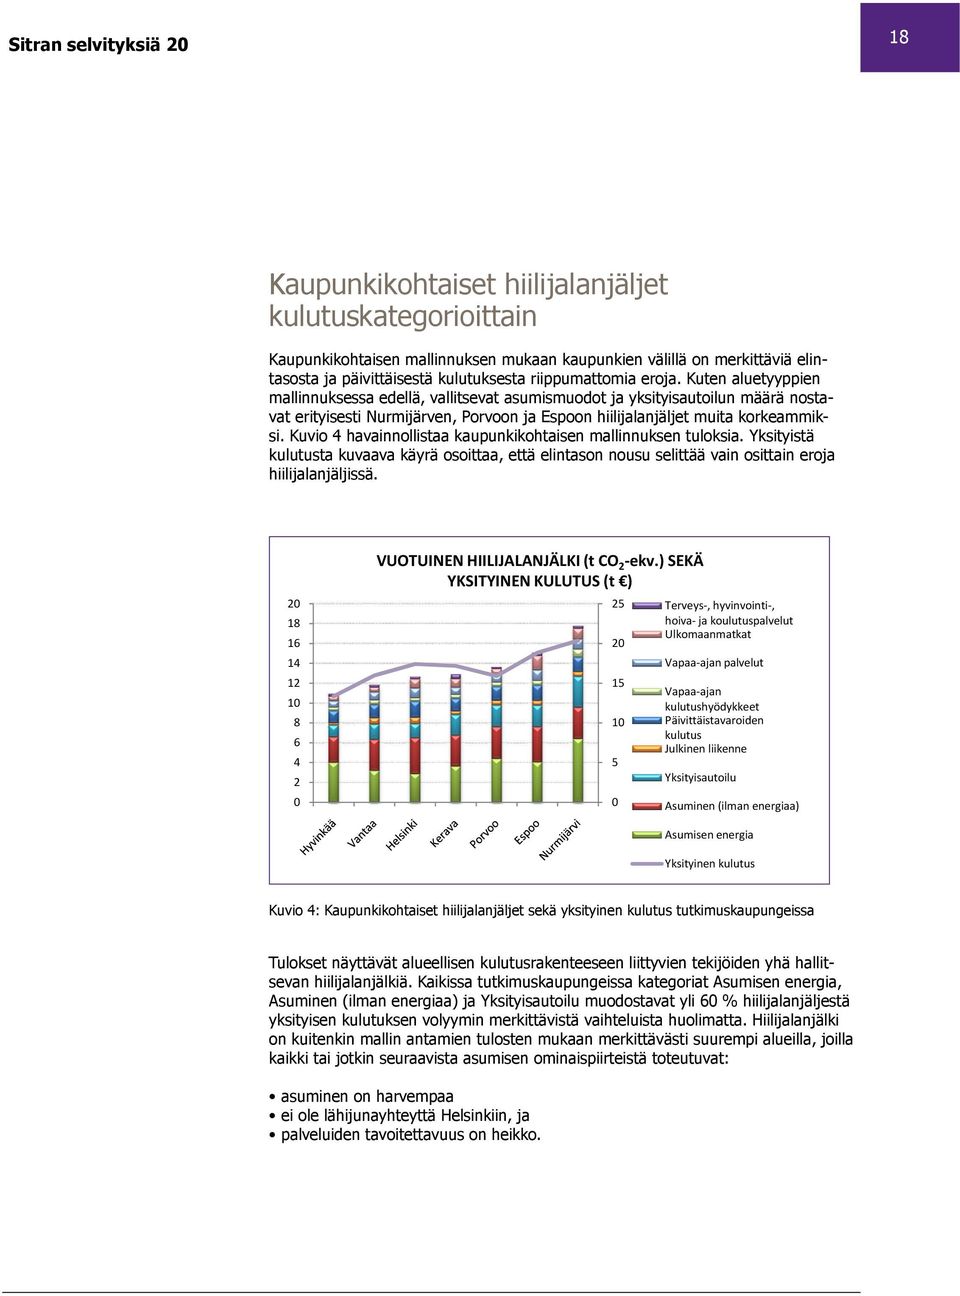 Kuten aluetyyppien mallinnuksessa edellä, vallitsevat asumismuodot ja yksityisautoilun määrä nostavat erityisesti Nurmijärven, Porvoon ja Espoon hiilijalanjäljet muita korkeammiksi.